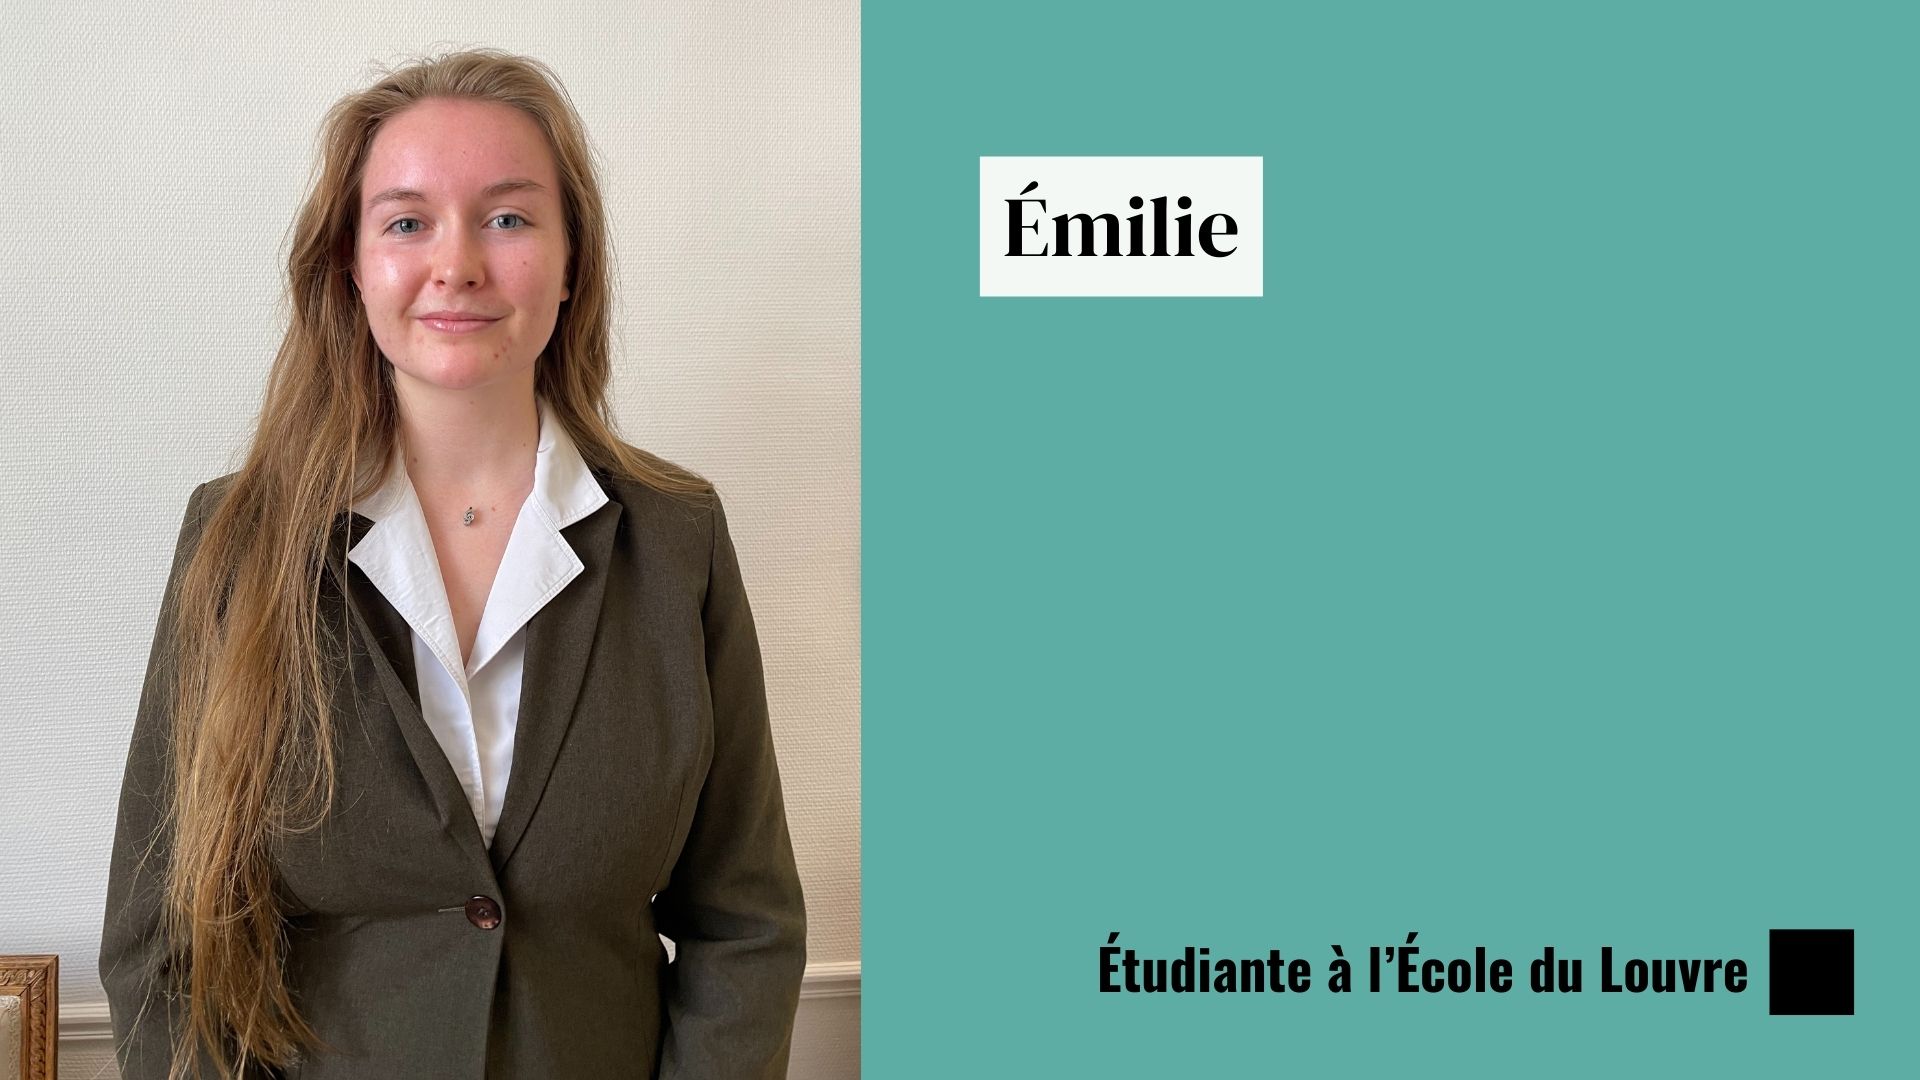 Émilie étudie à l’École du Louvre.